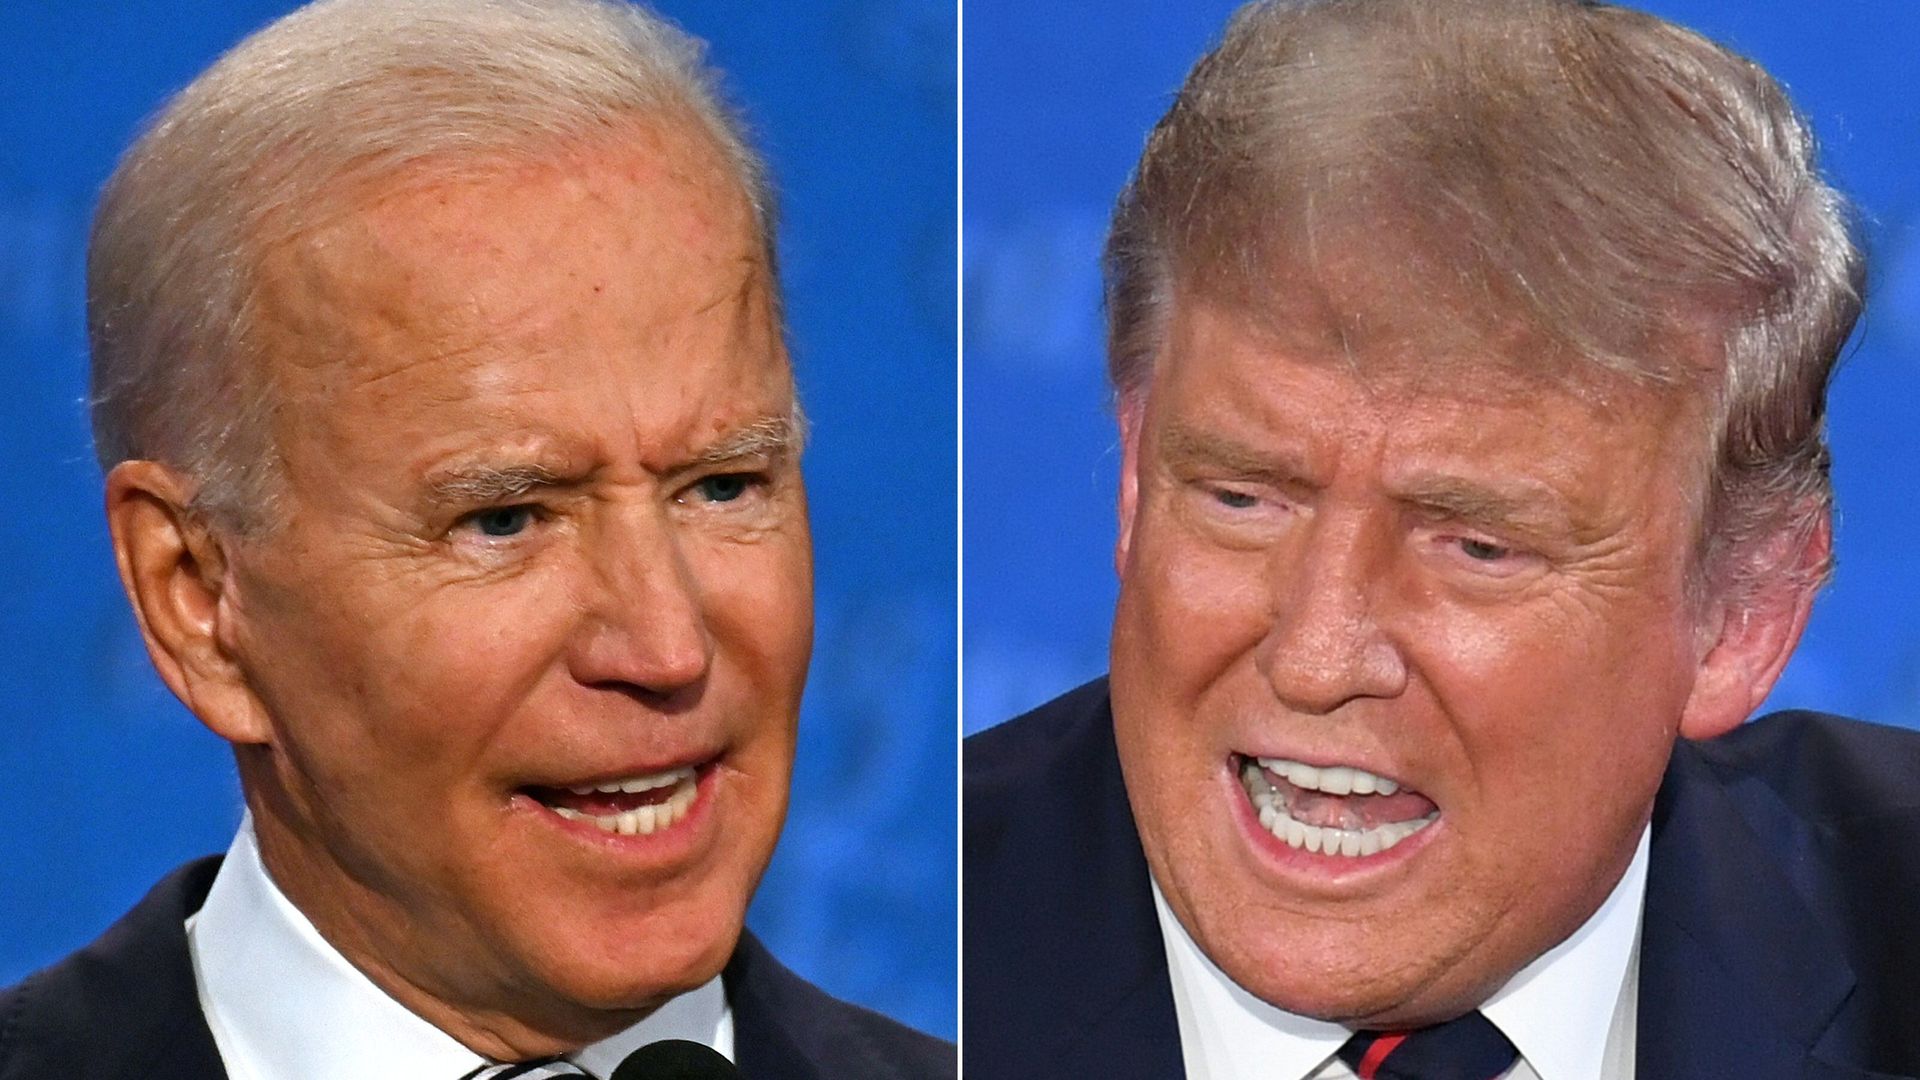 donald trump and joe biden at the presidential debate